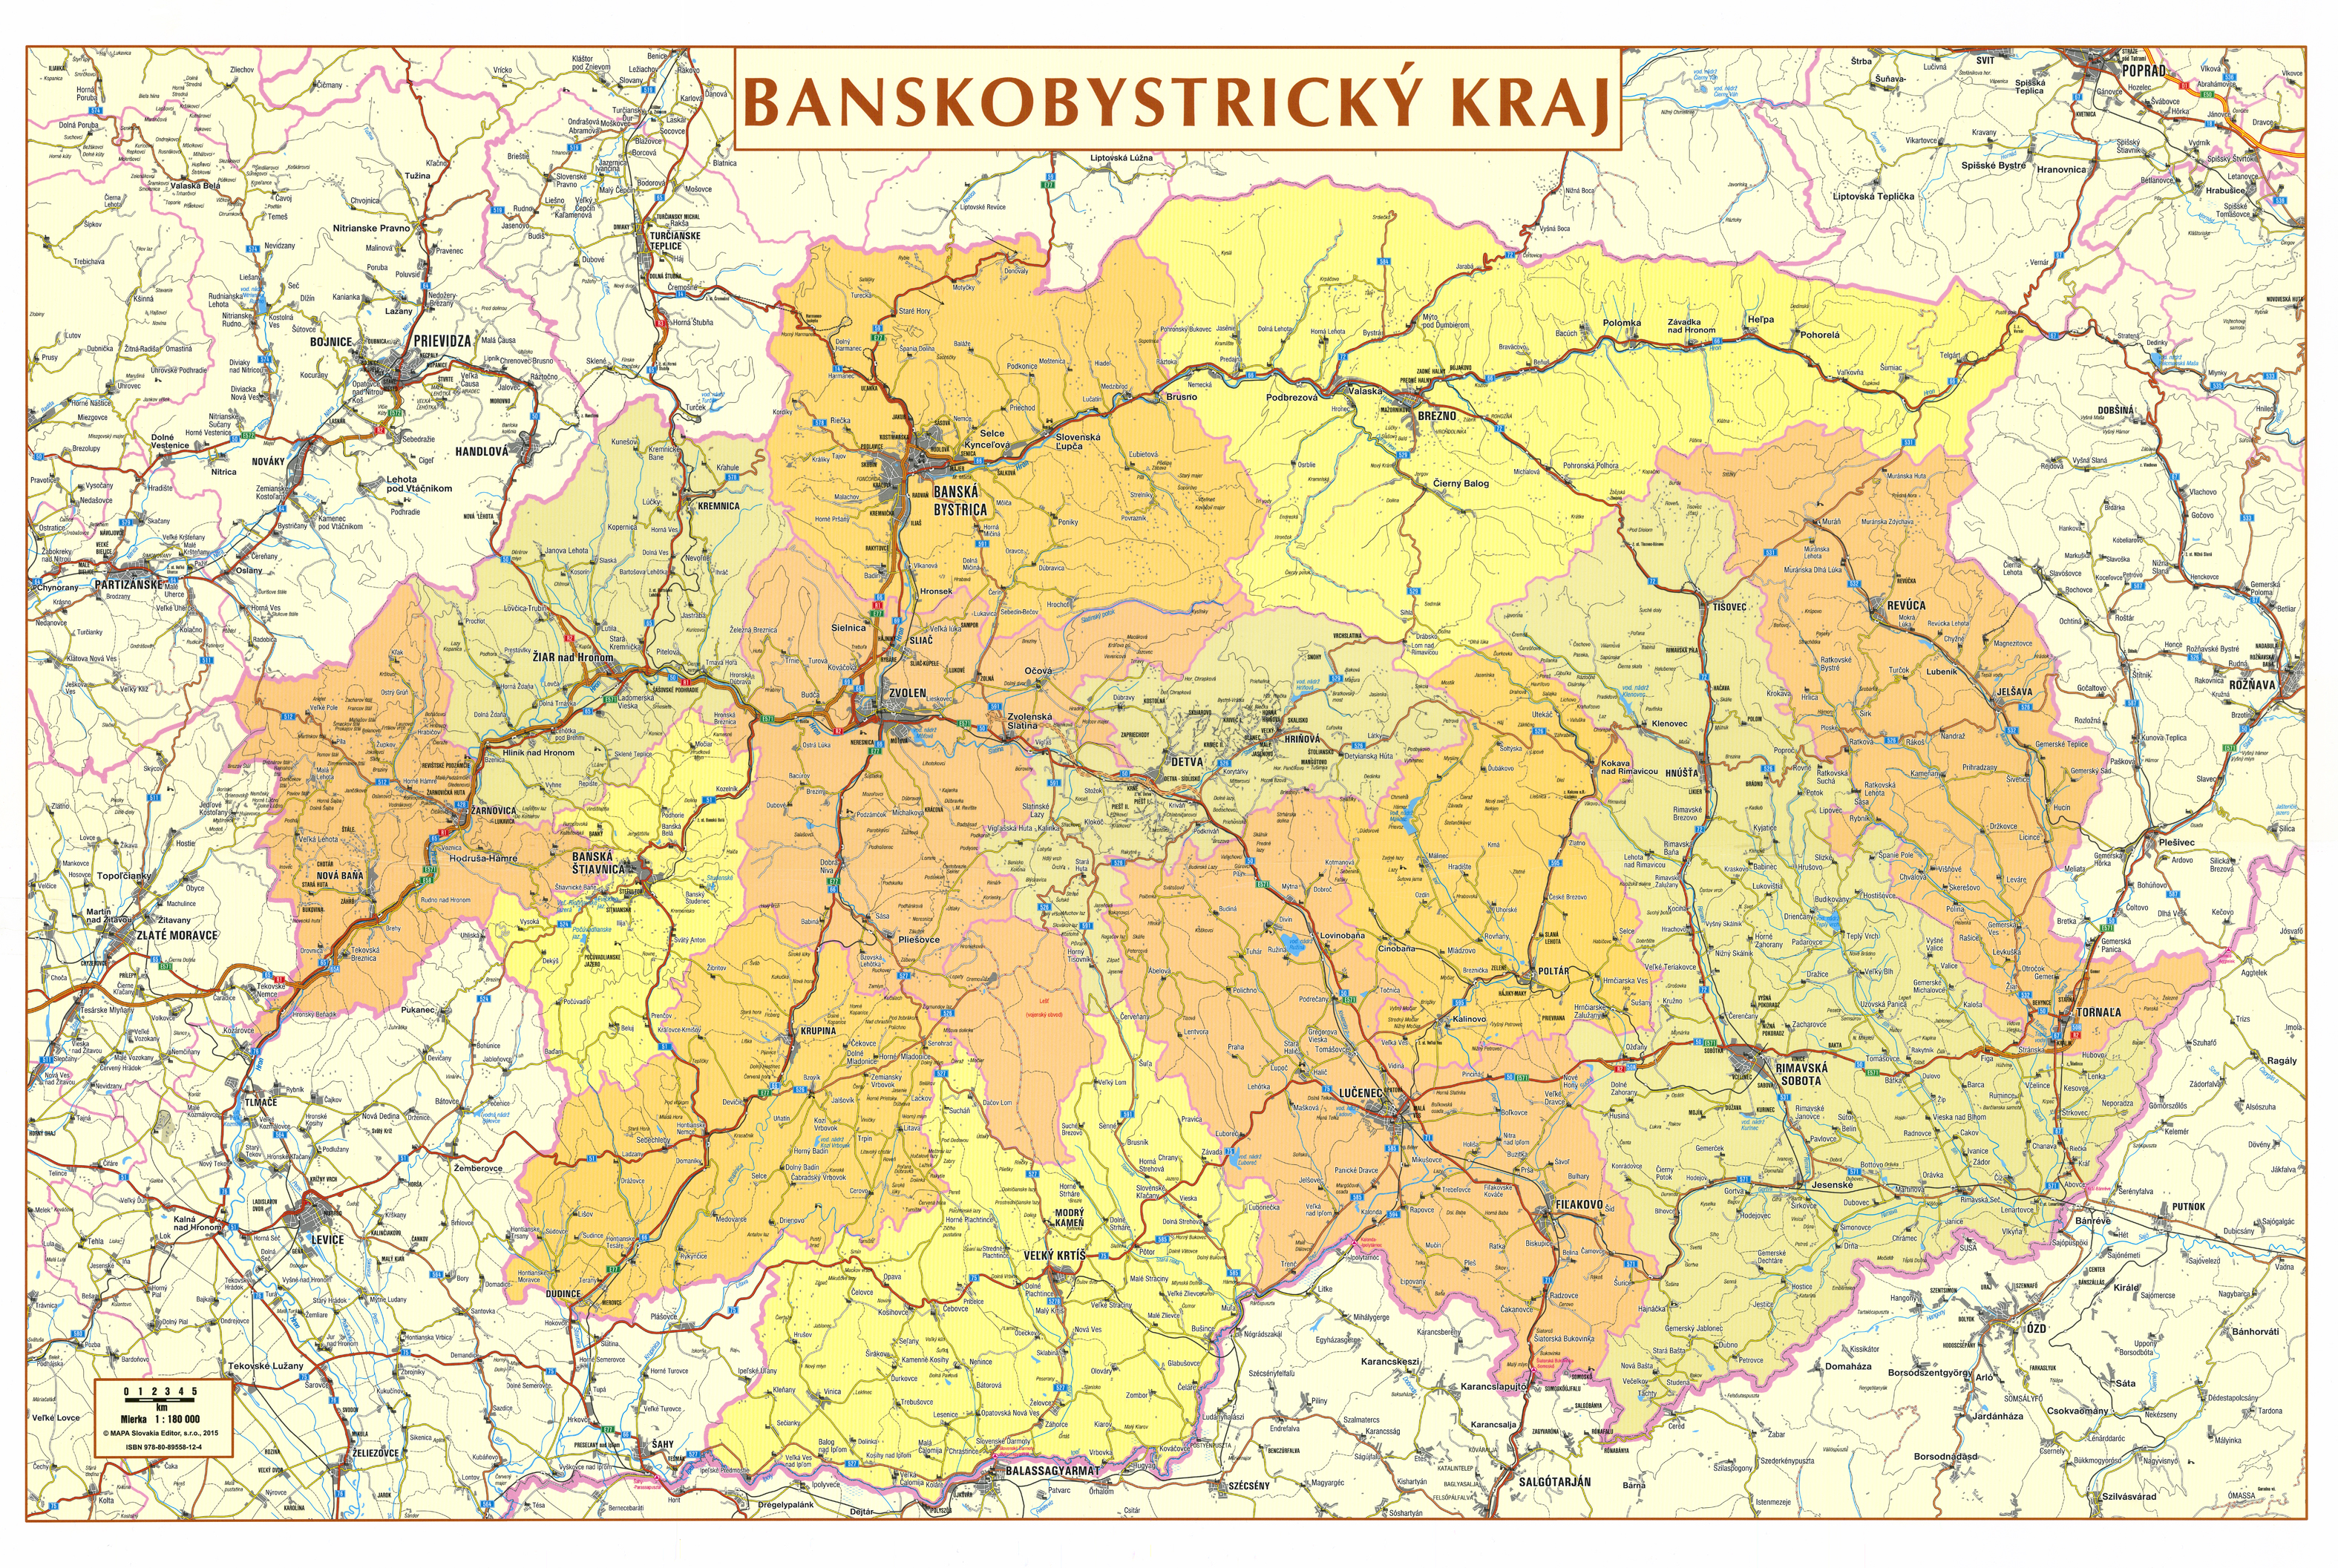 nástenná mapa Banskobystrický kraj administratívne členenie 66x96cm lamino,lišty